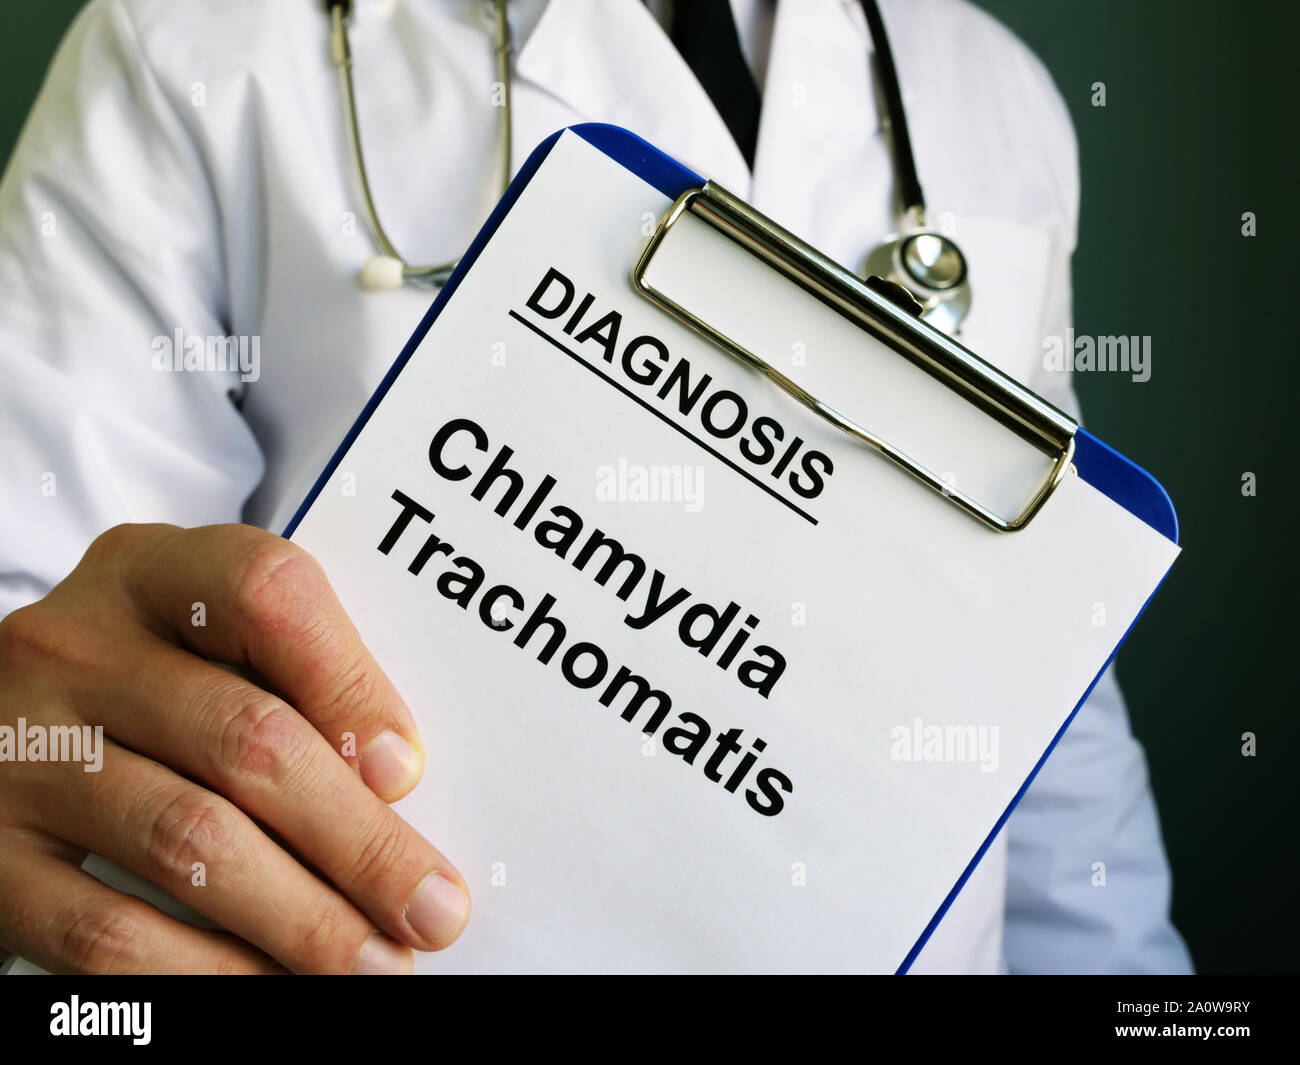 Chlamydia trachomatis la diagnosi nelle mani del medico. Foto Stock